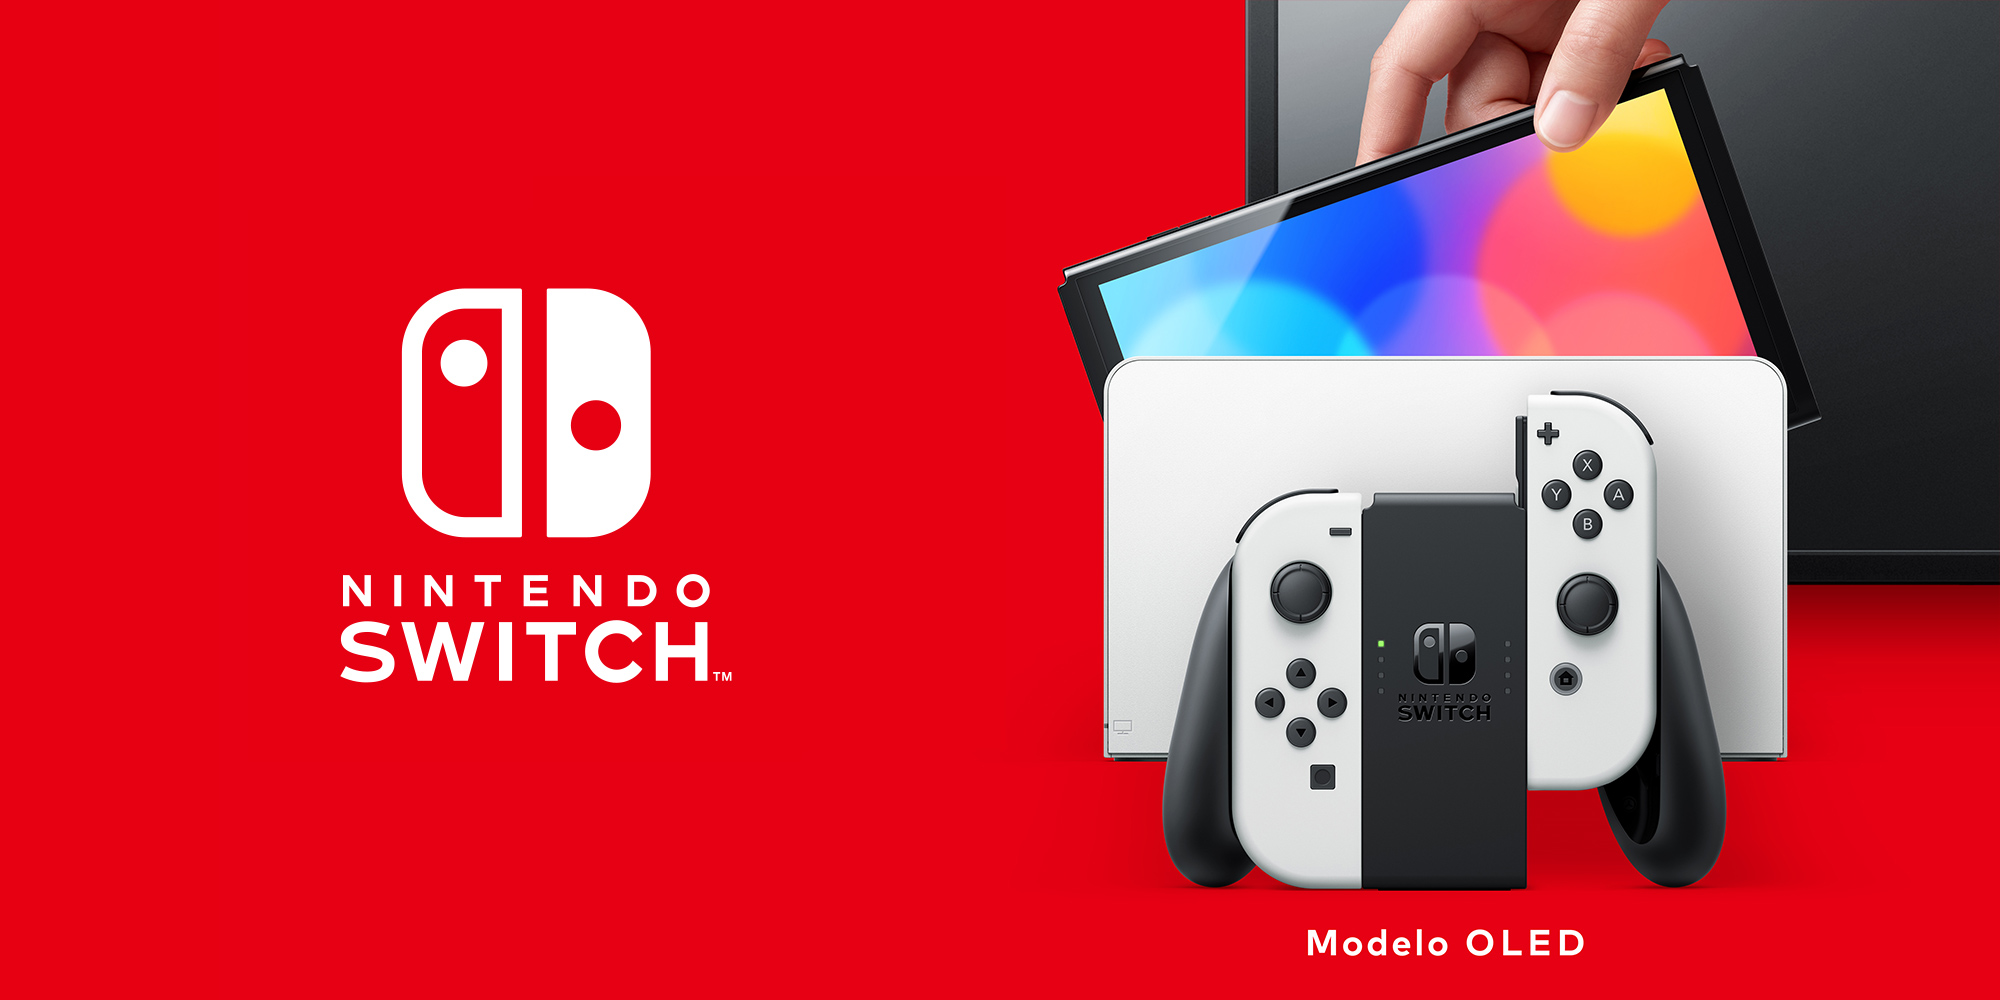 Nintendo Switch Modelo OLED | Hardware